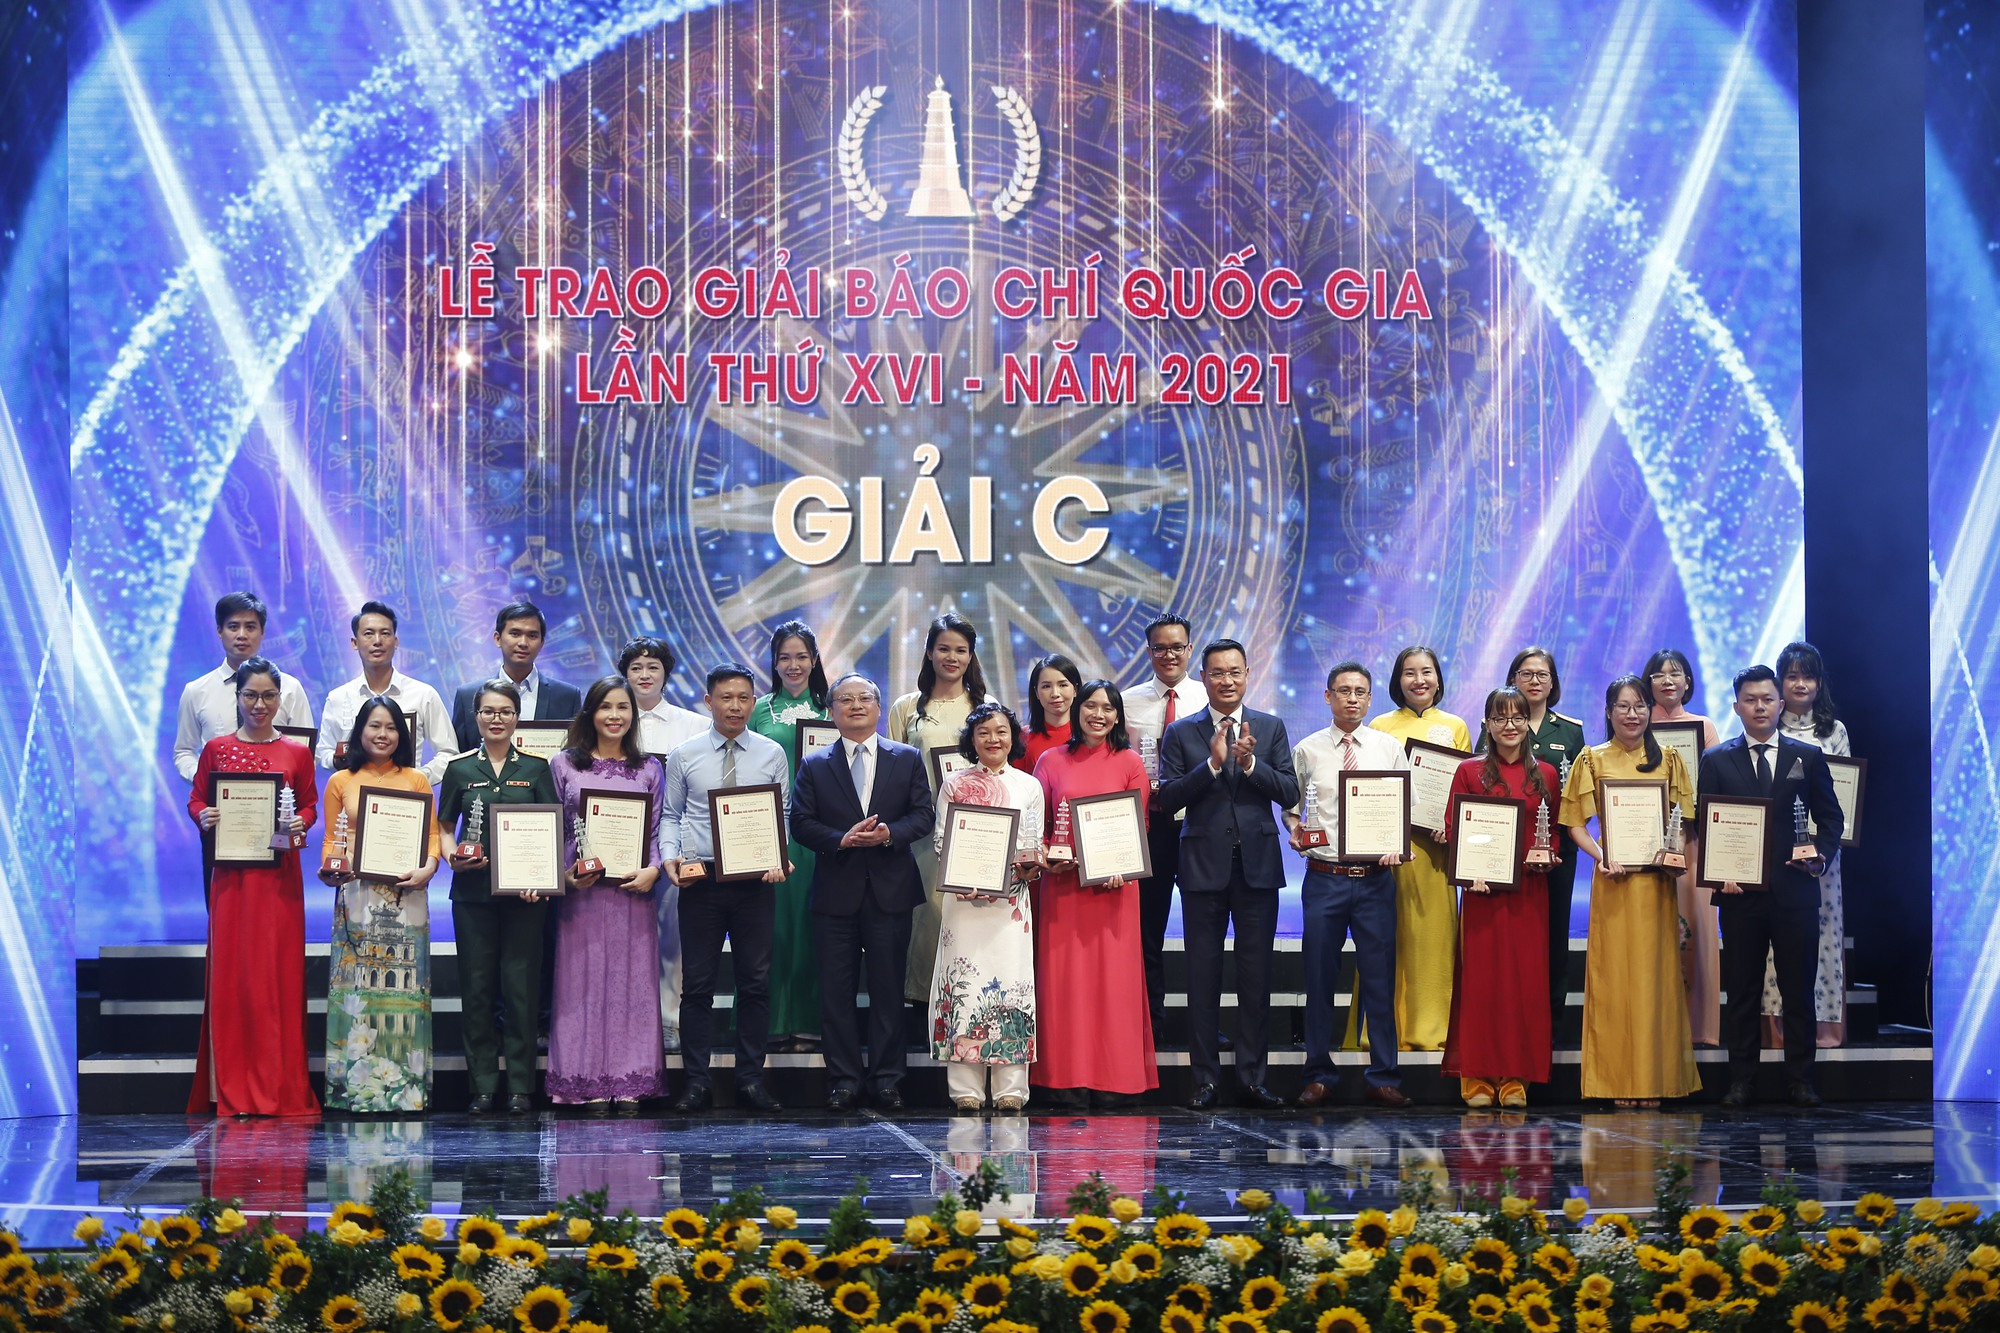 Báo NTNN/Dân Việt đoạt hàng loạt Giải Báo chí Quốc gia lần thứ XVI - năm 2021 - Ảnh 8.